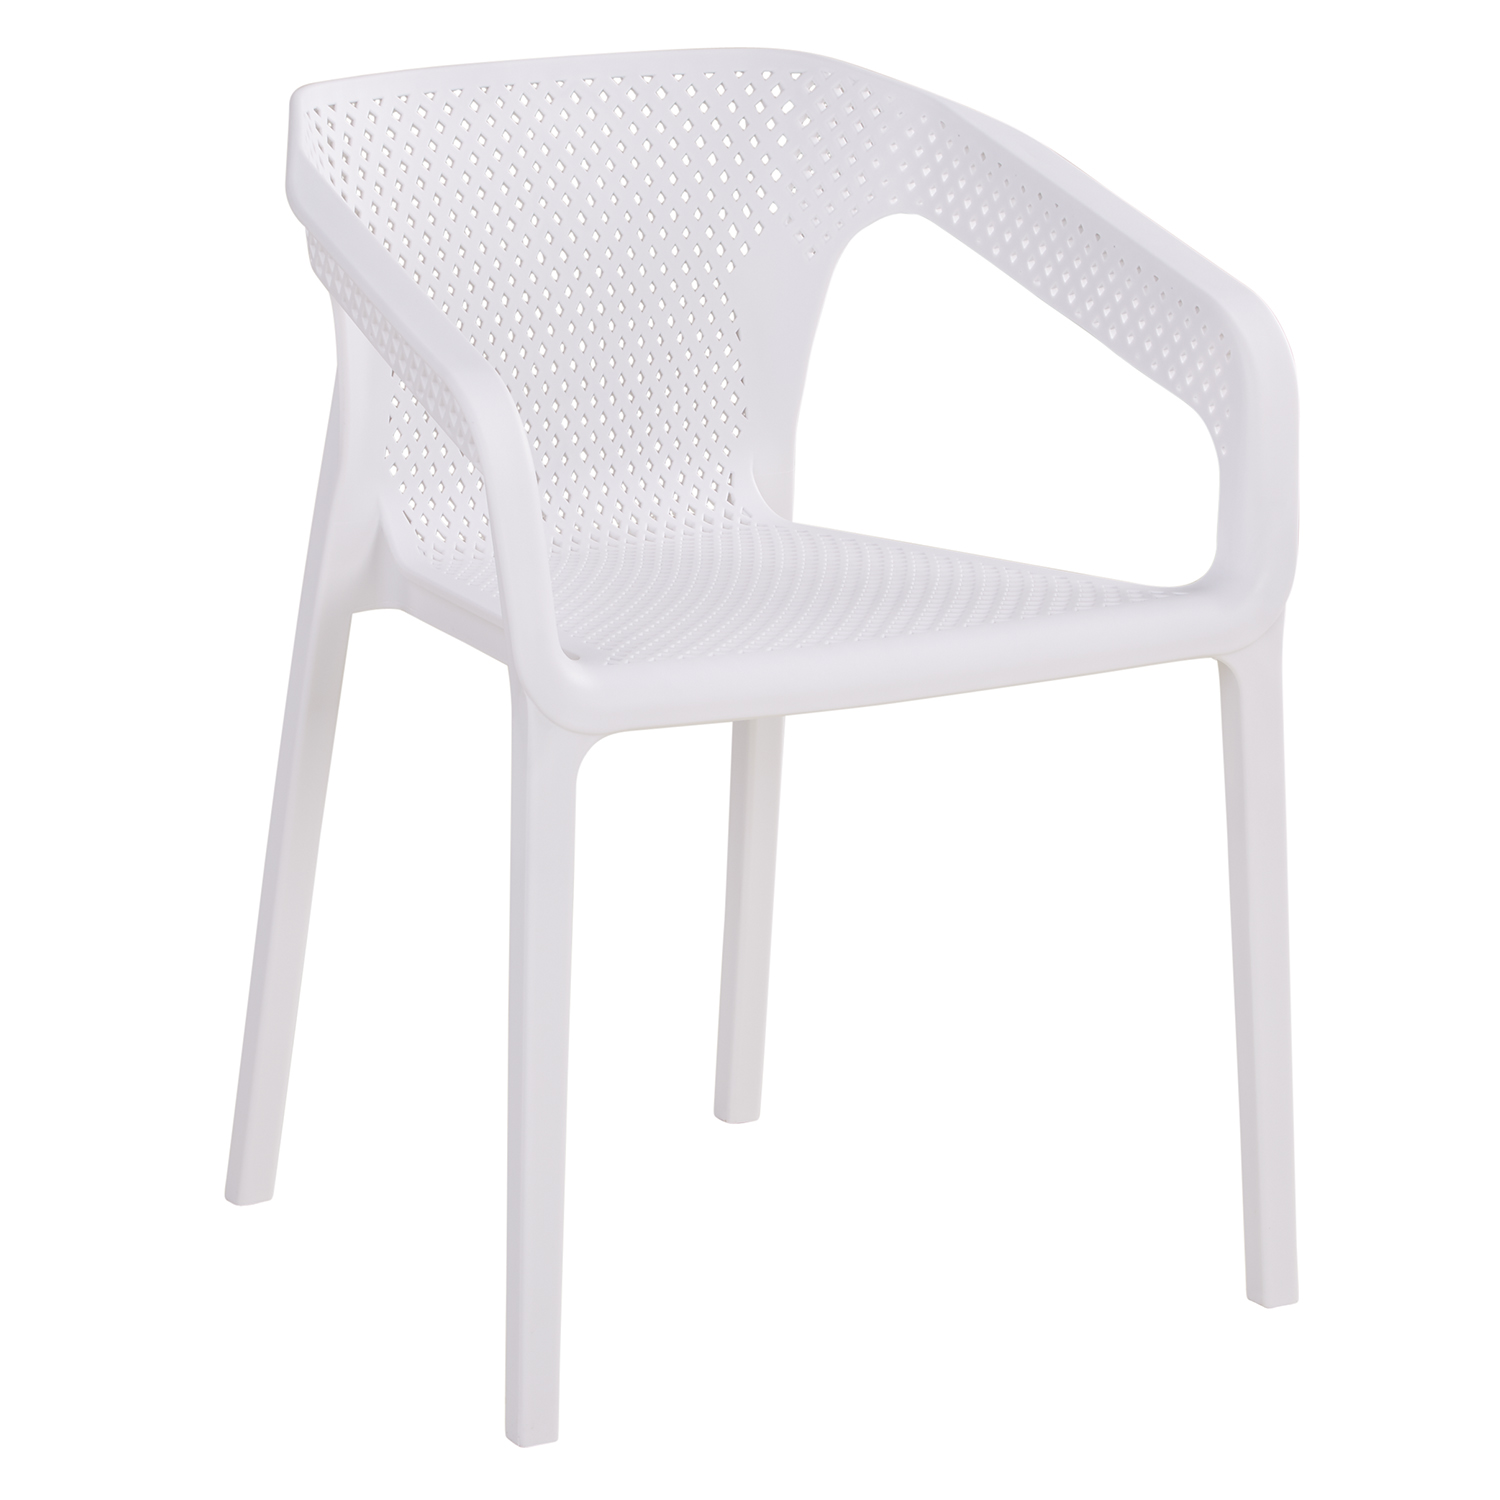 Chaise de jardin avec accoudoirs Blanc Lot de 4 Fauteuils de jardin Plastique Chaises exterieur Chaises empilable